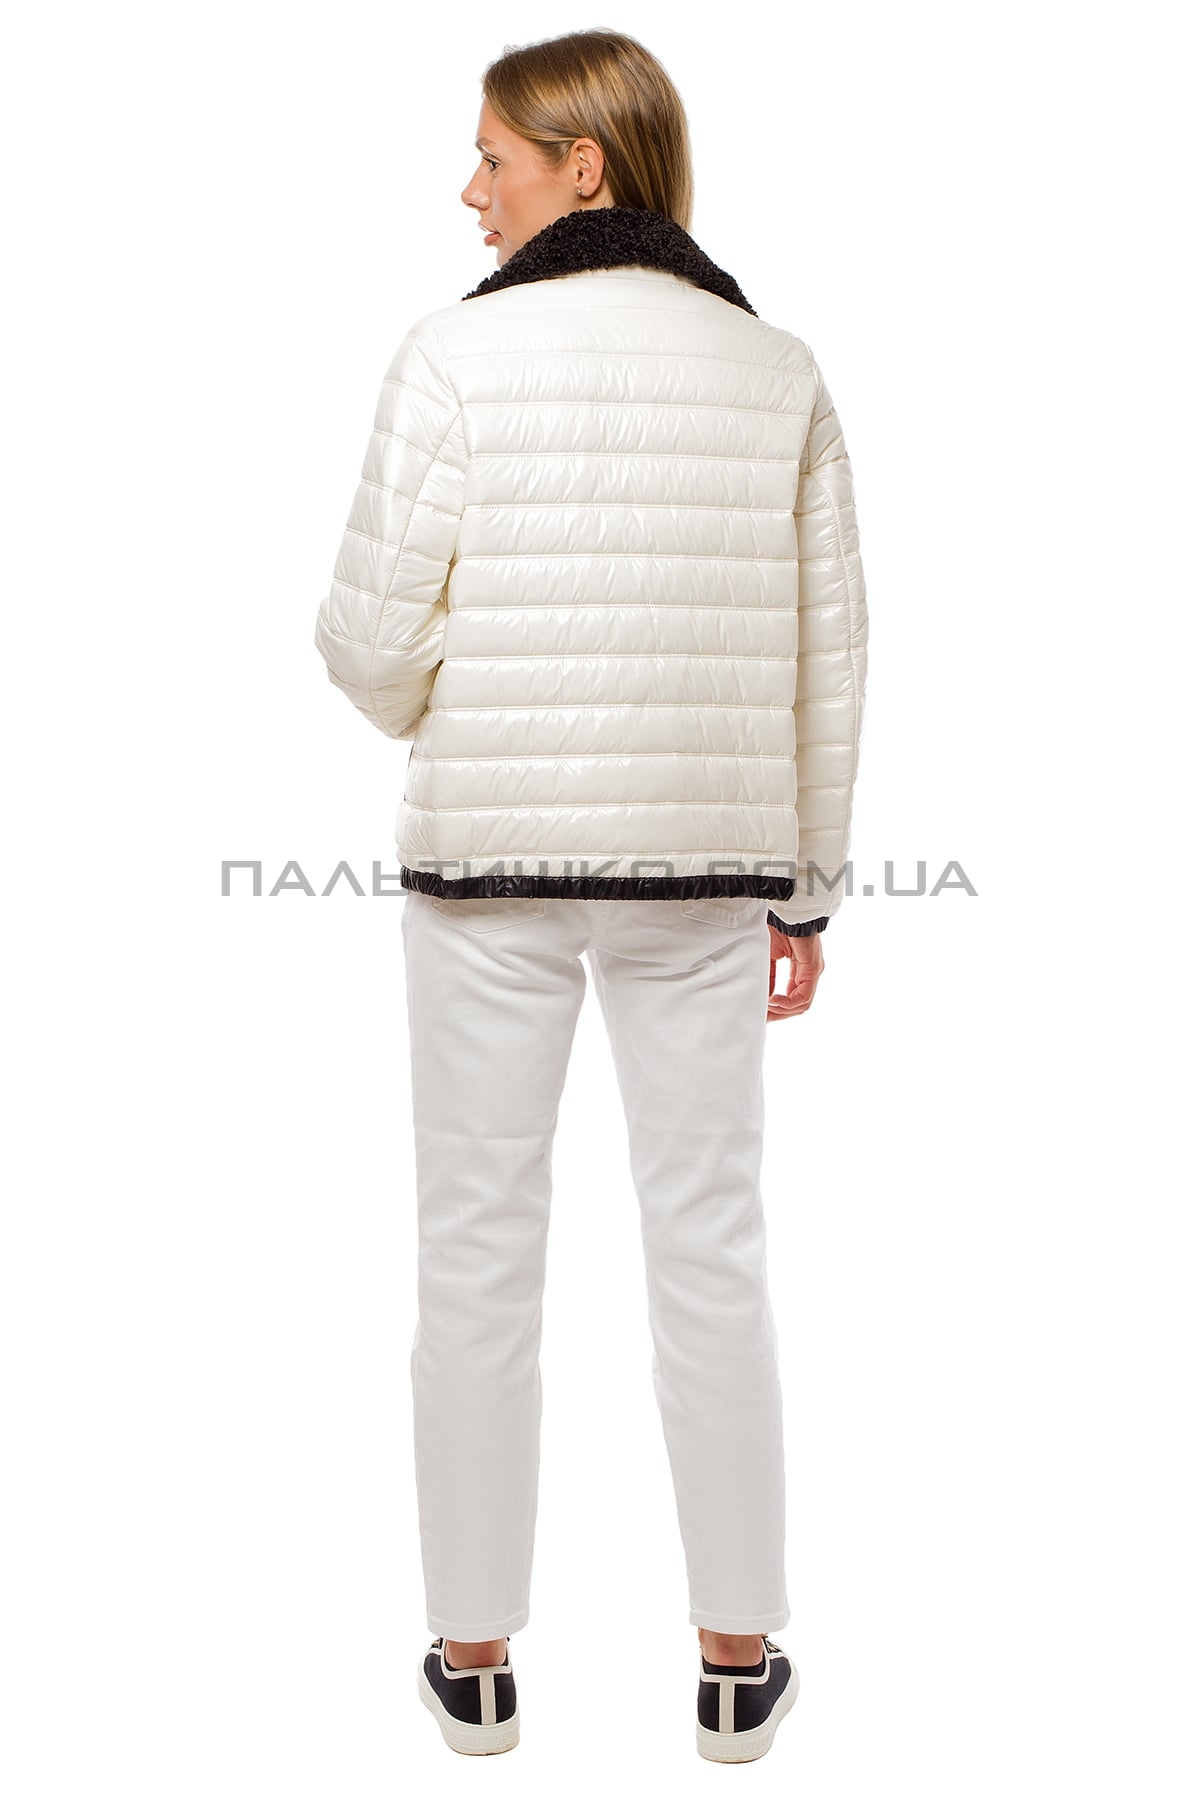  Женская демисезонная куртка белая с воротником